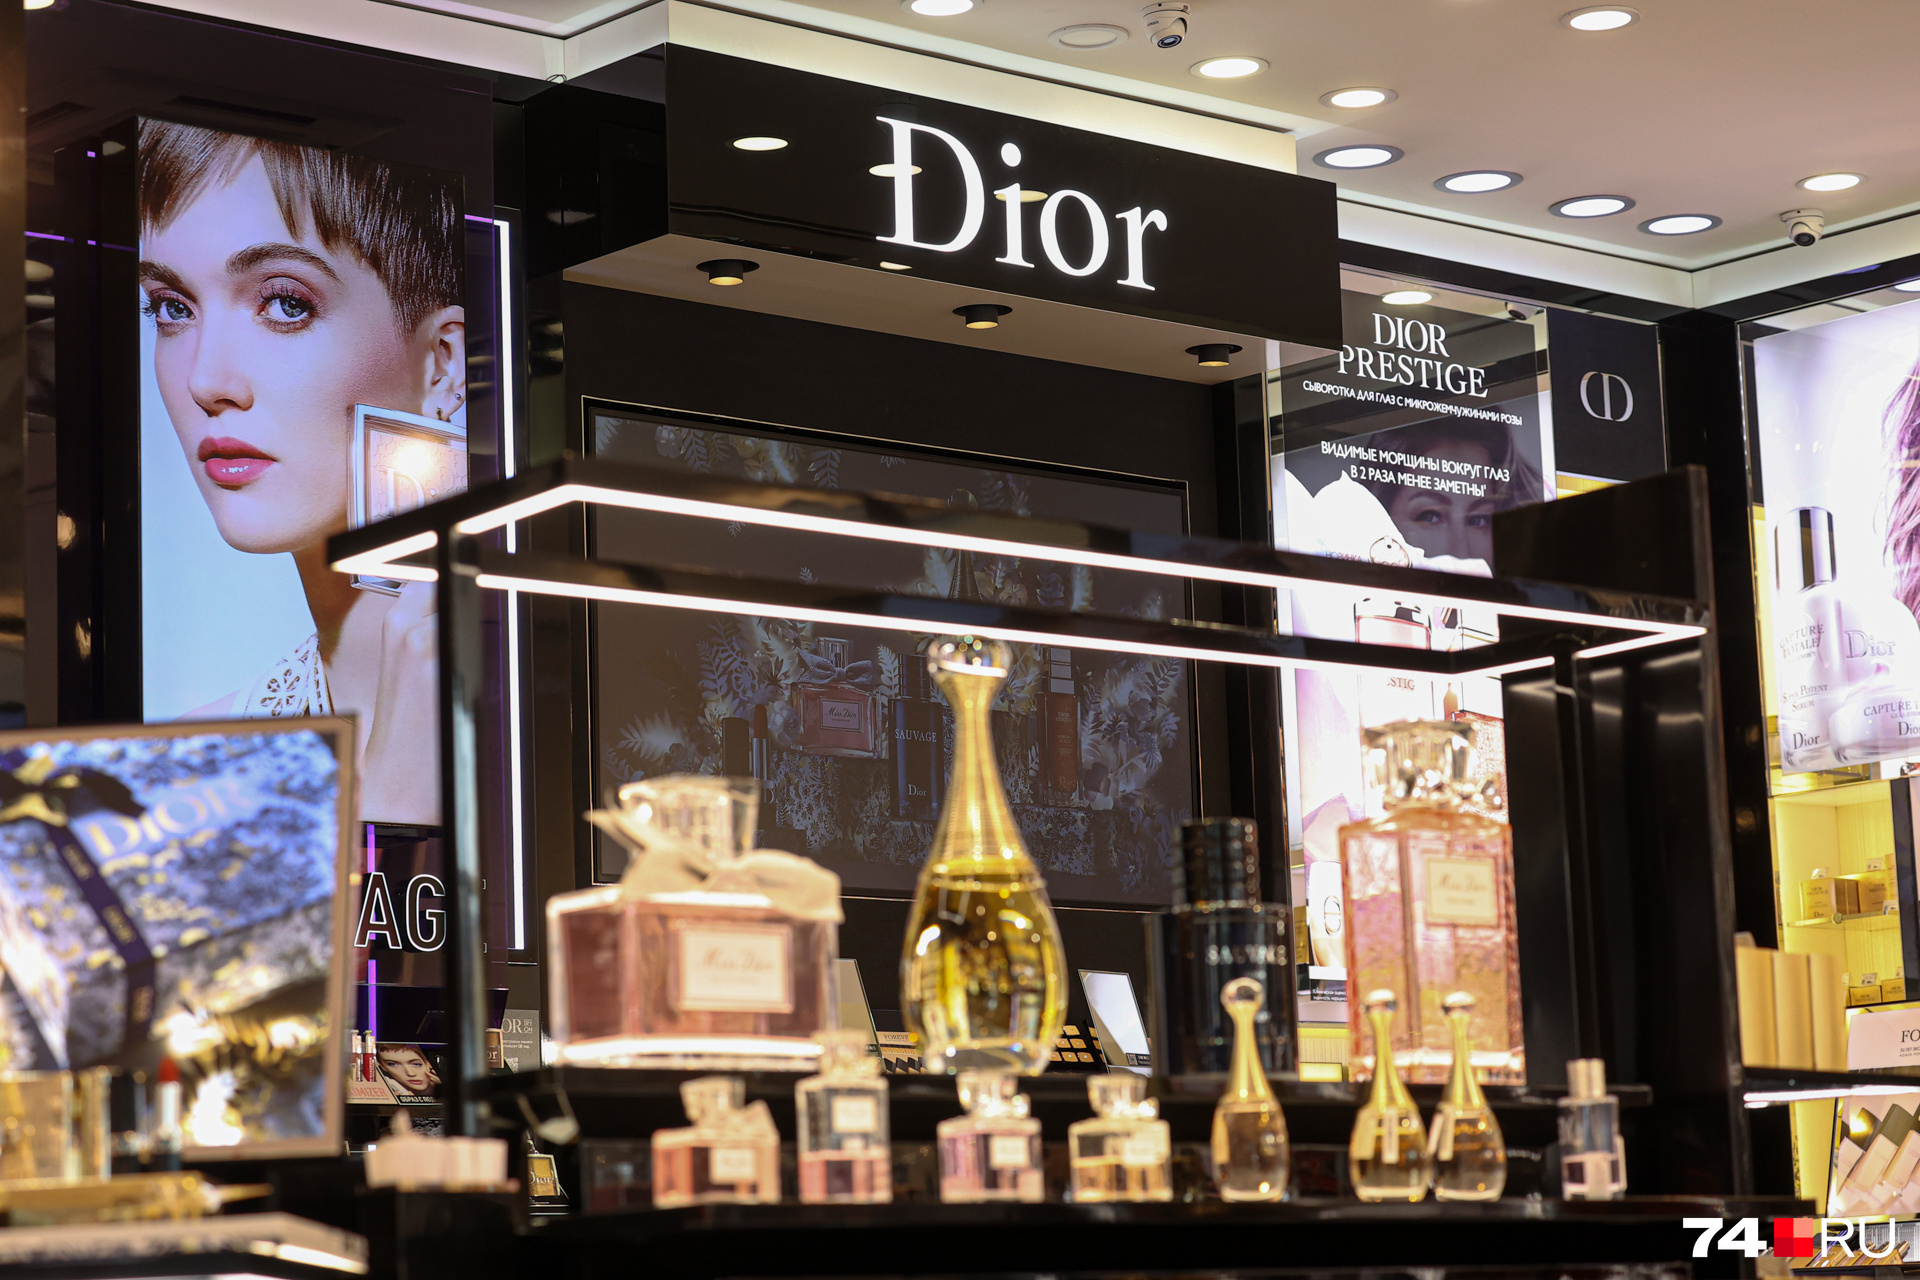 Духи, декоративная косметика и средства по уходу от Dior, Dolce&Gabbana, Gucci, Chanel пользуются популярностью у русских женщин